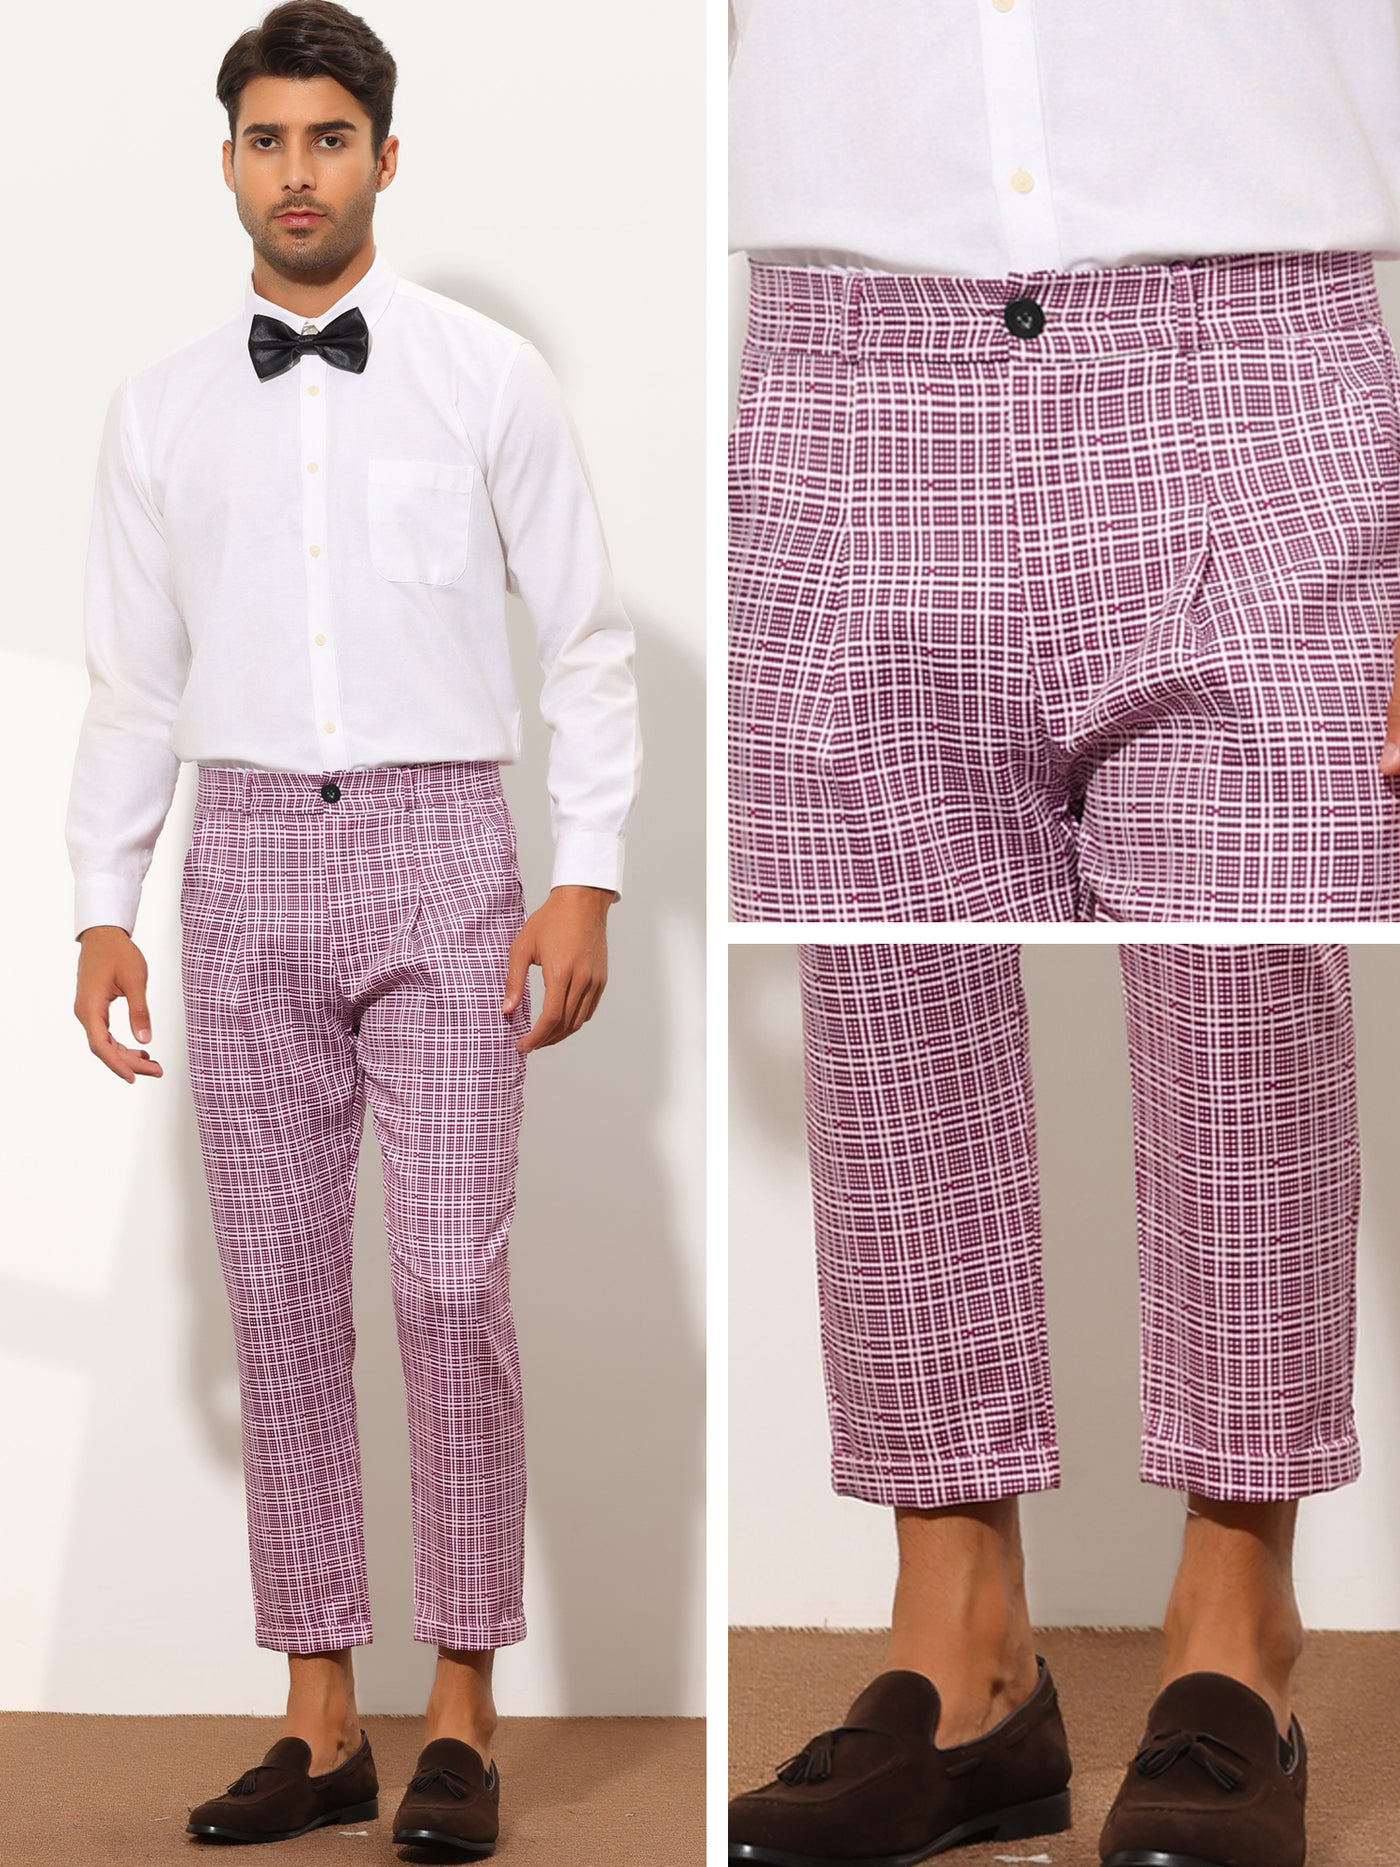 Bublédon Men's Plaid Cropped Slim Fit Business Checked Slacks Dress Pants